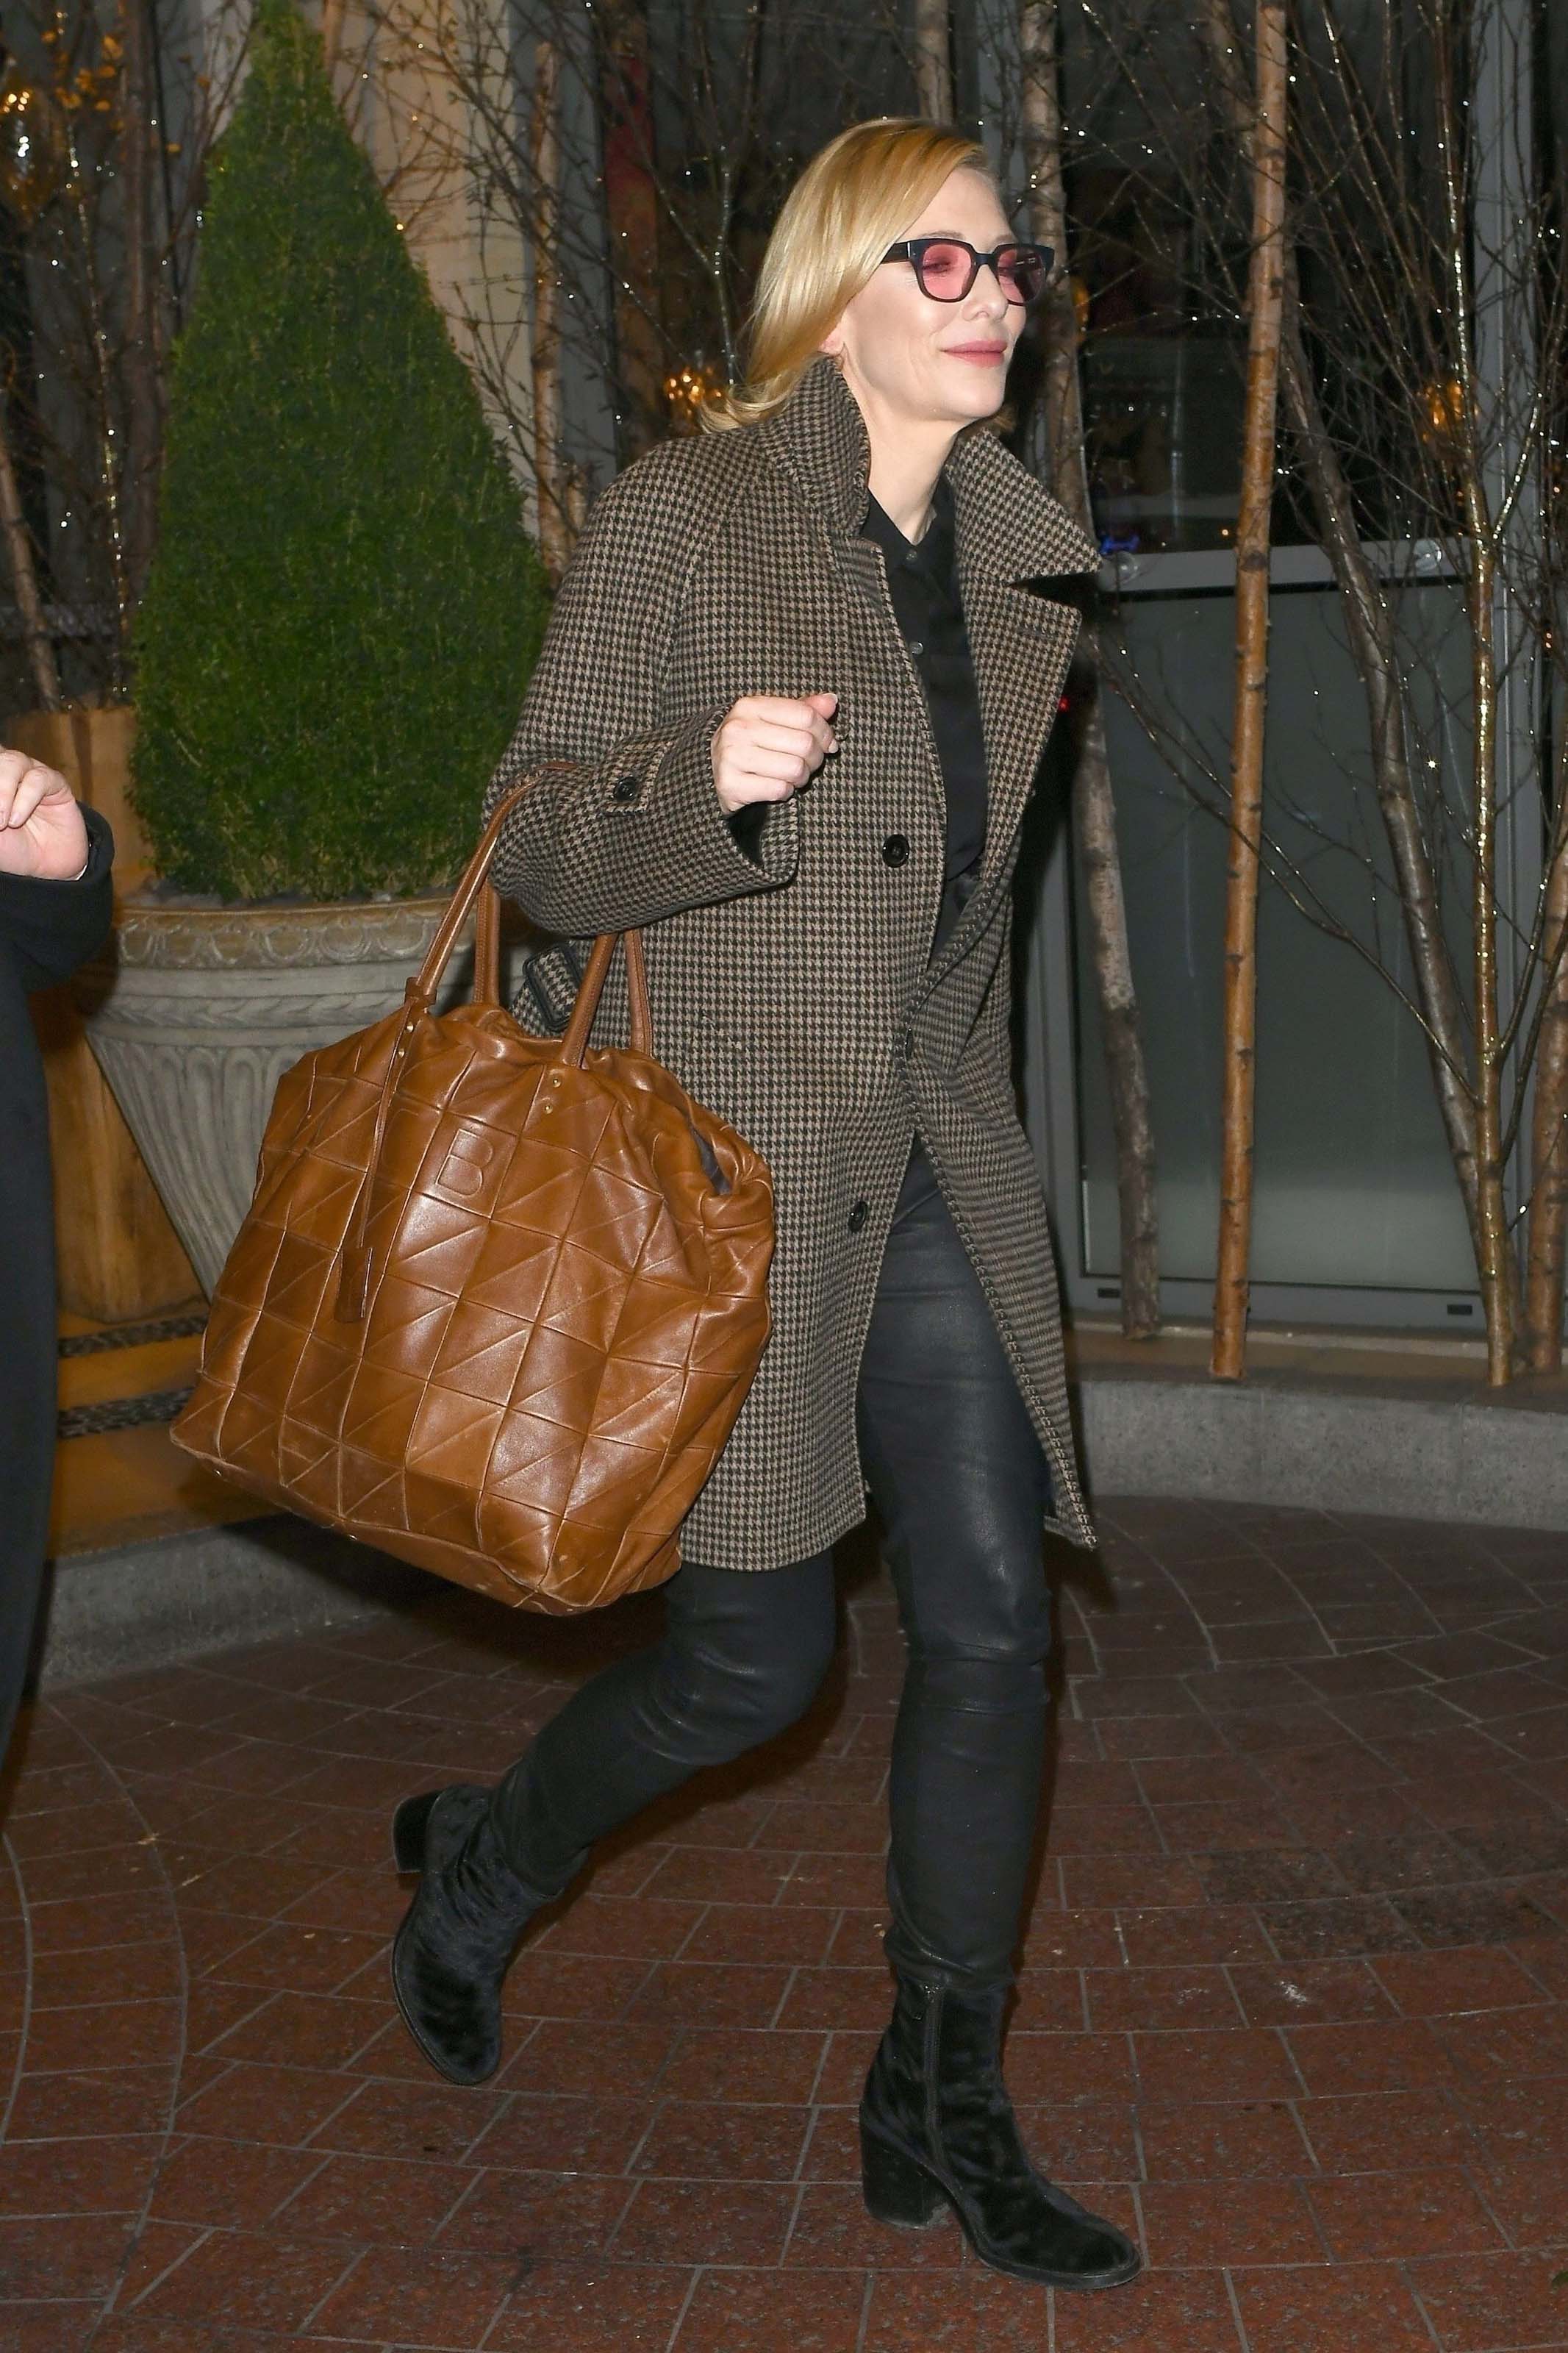 Cate Blanchett seen leaving the SOHO Hotel